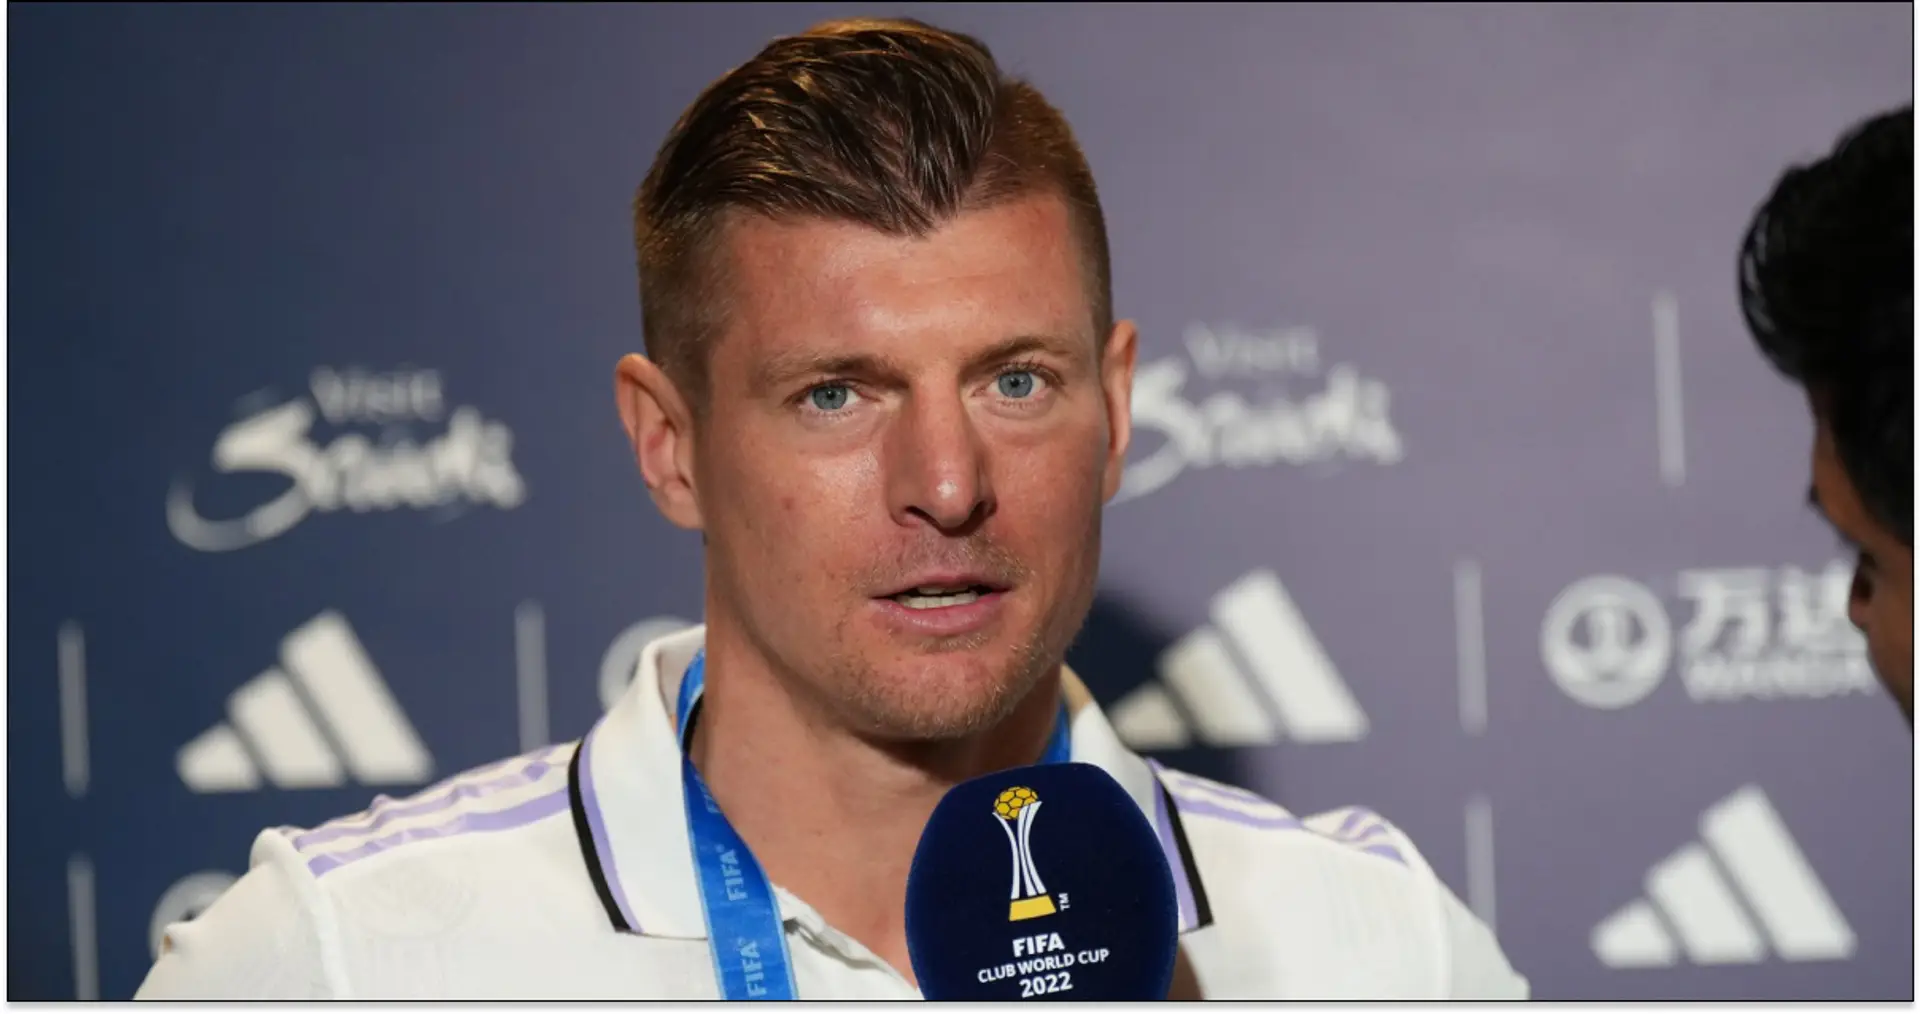 "Ich denke darüber nach": Kroos kommentiert seine Vertragsverlängerung in Madrid und Rücktrittspläne